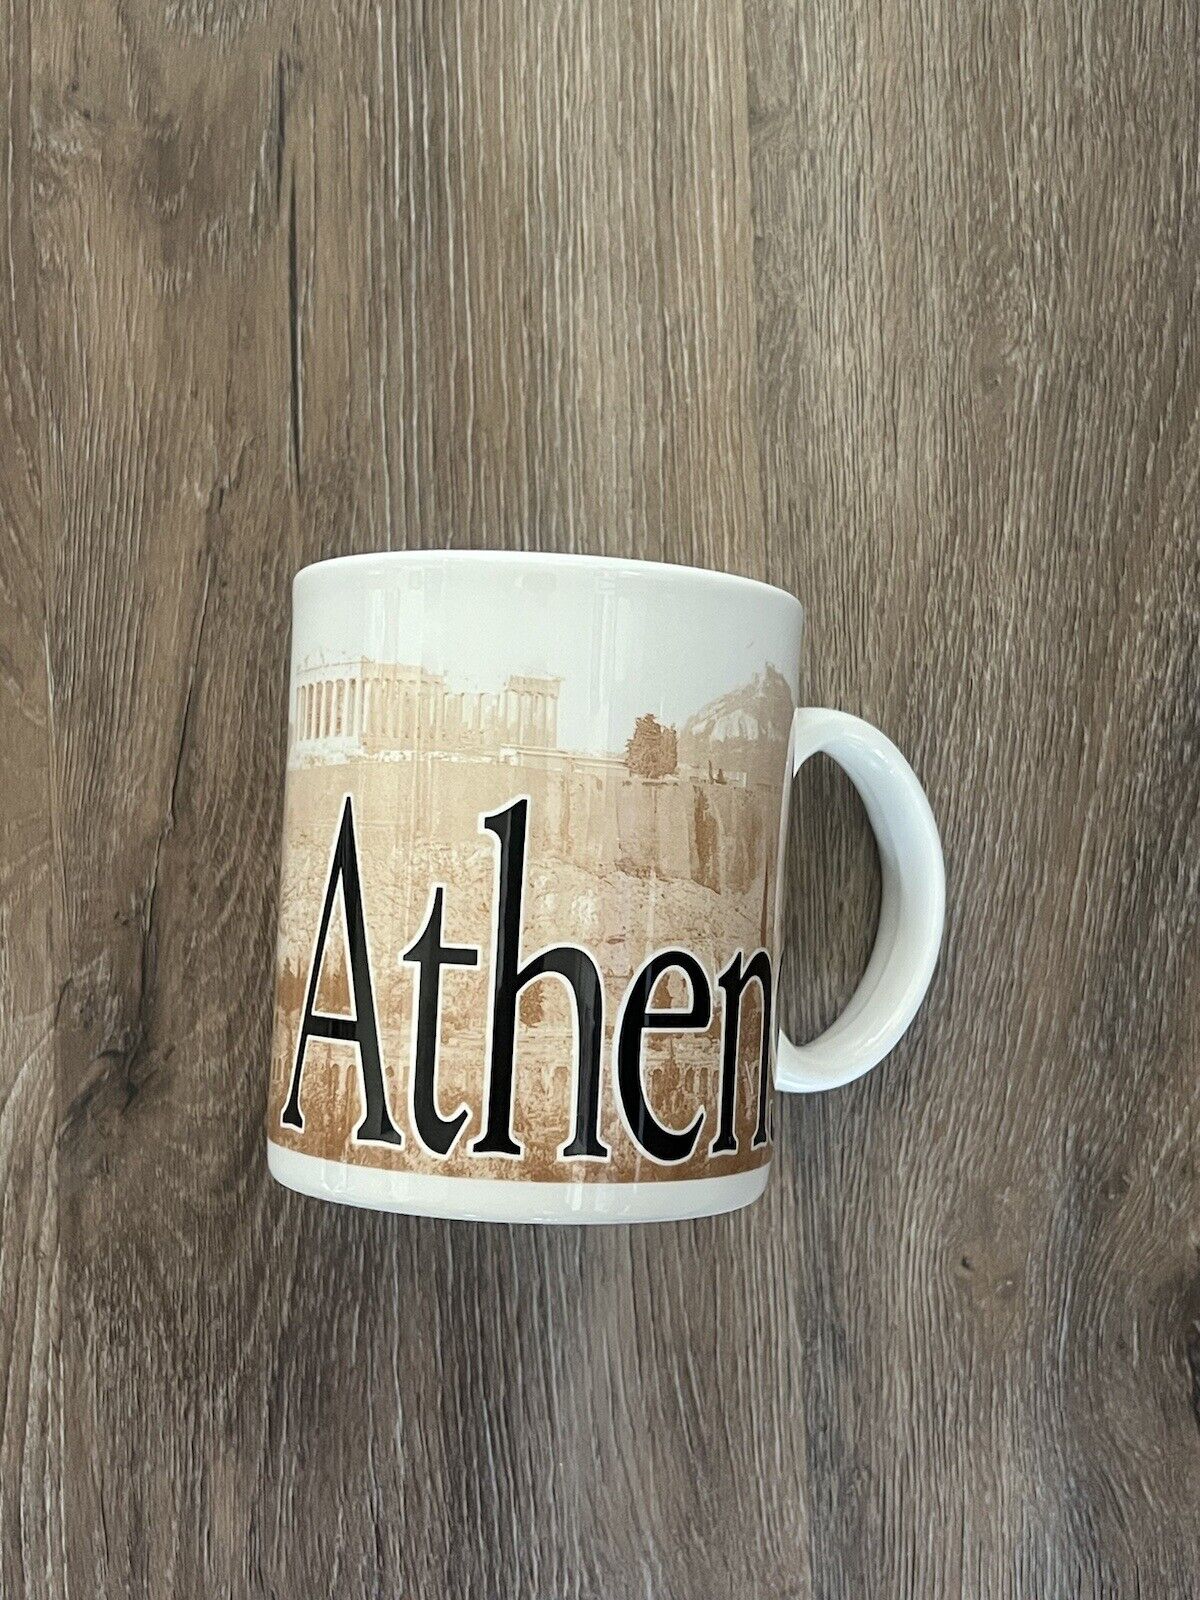 2002 Starbucks Coffee Mug Athens City Mug Collector Series Made in England